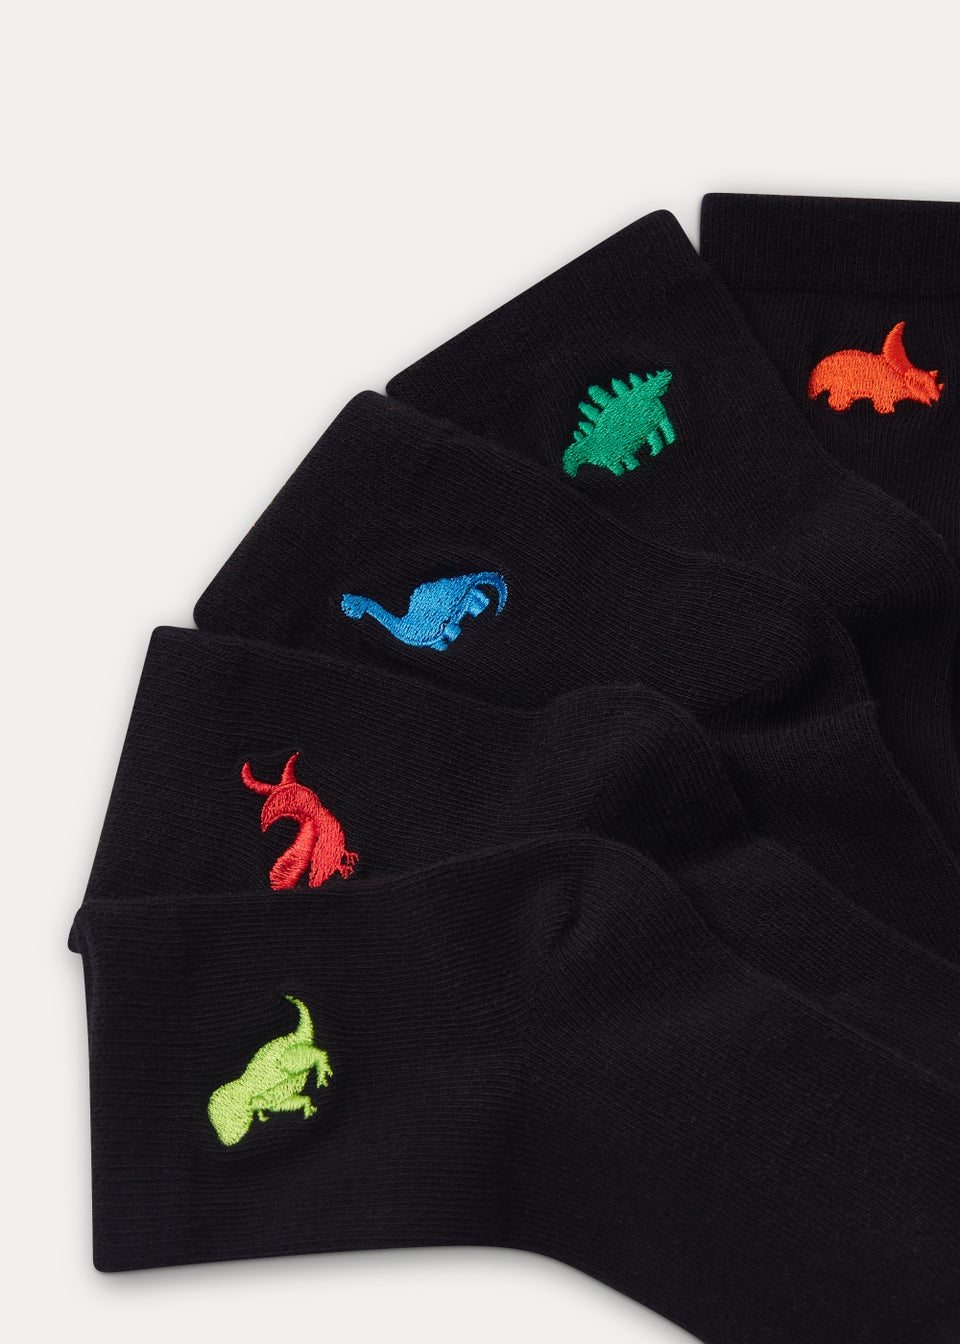 Kids 5 Pack Black Dinosaur Embroidered Socks (Younger 6-Older 6.5)